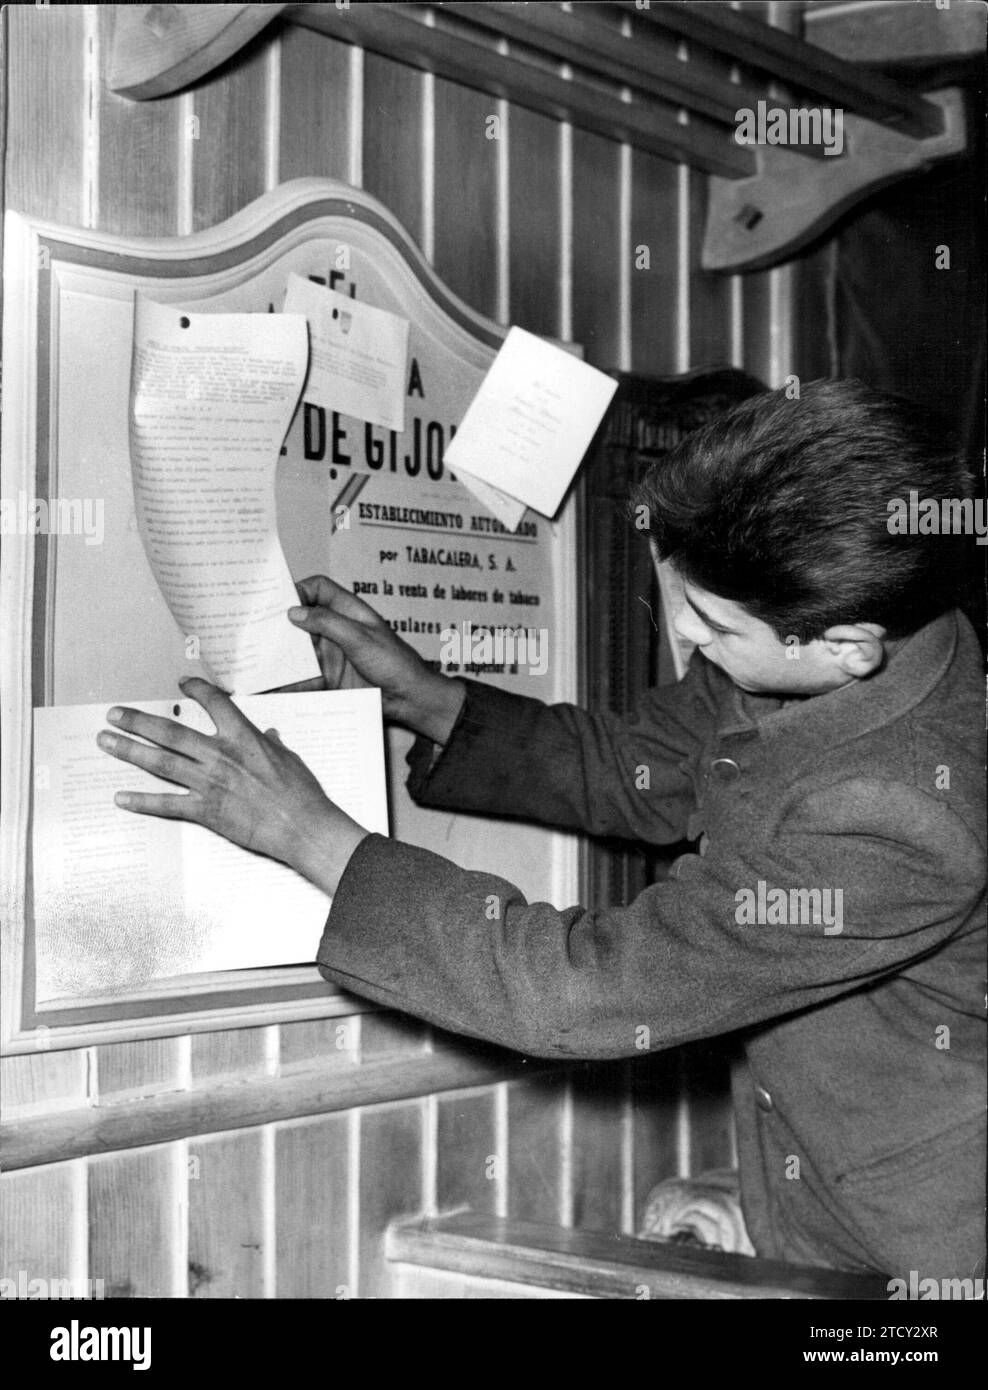 12/31/1962. Mit der Schaltfläche werden die Ankündigungen der Ereignisse entfernt oder auf der Tafel angezeigt. Quelle: Album / Archivo ABC / Basabe Stockfoto